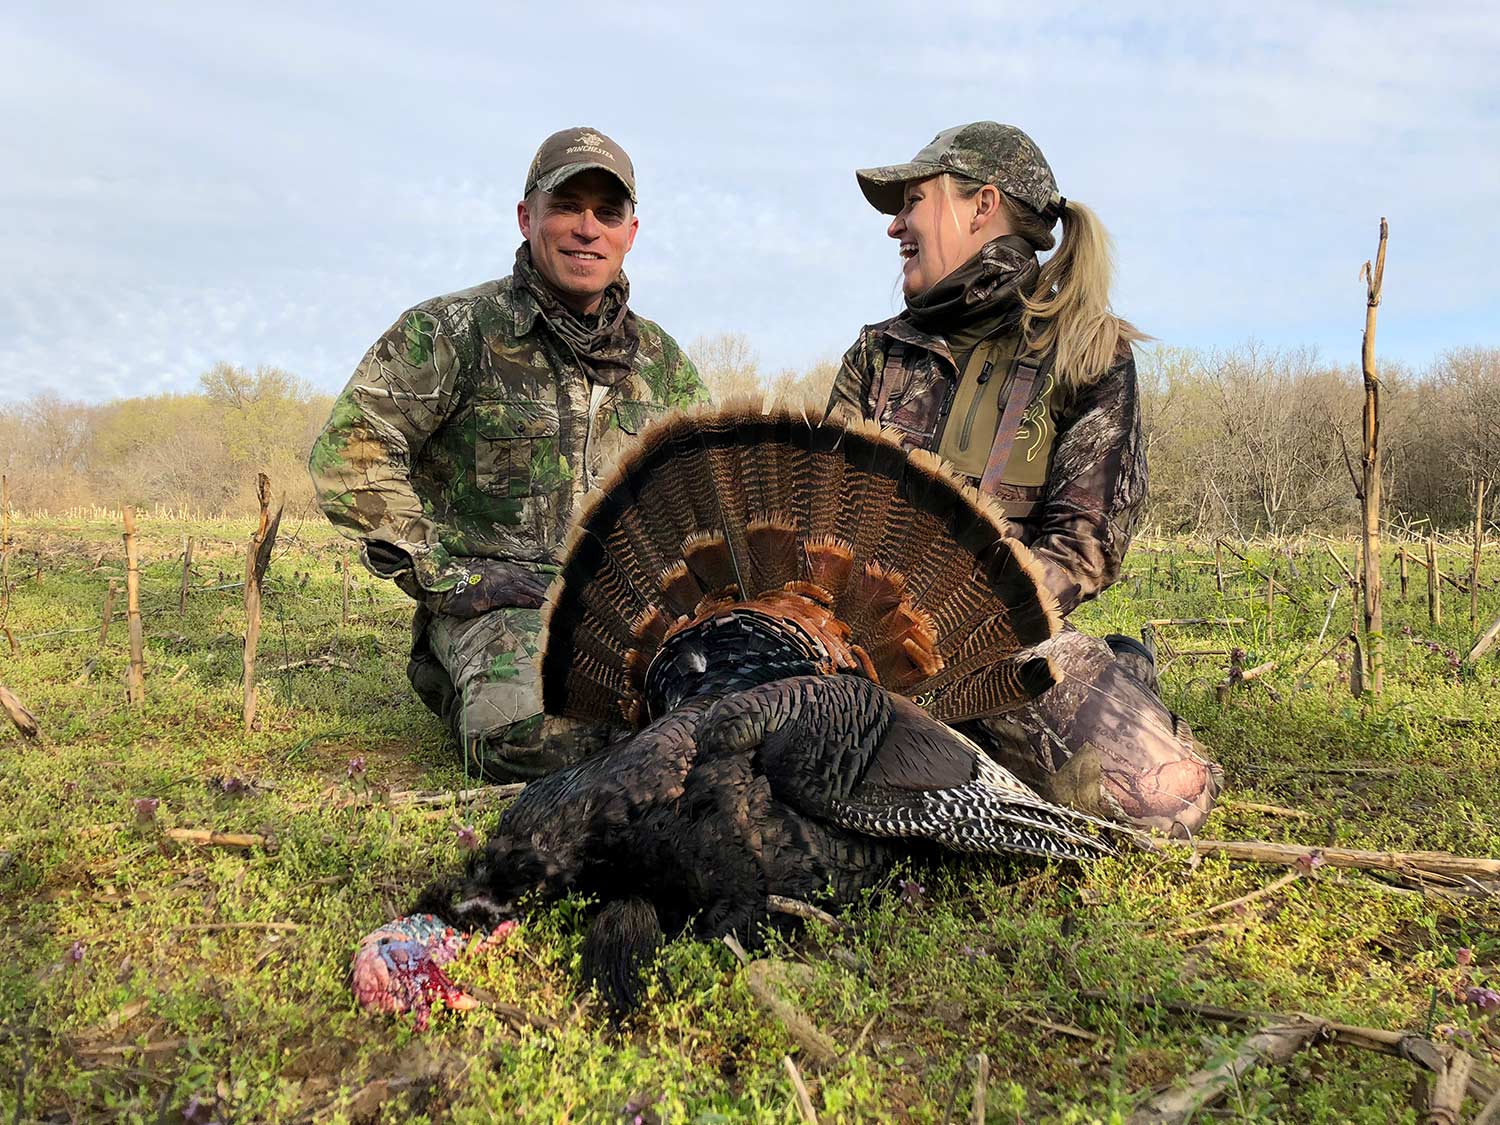 Two hunters kneeling behind a turkey in a field.